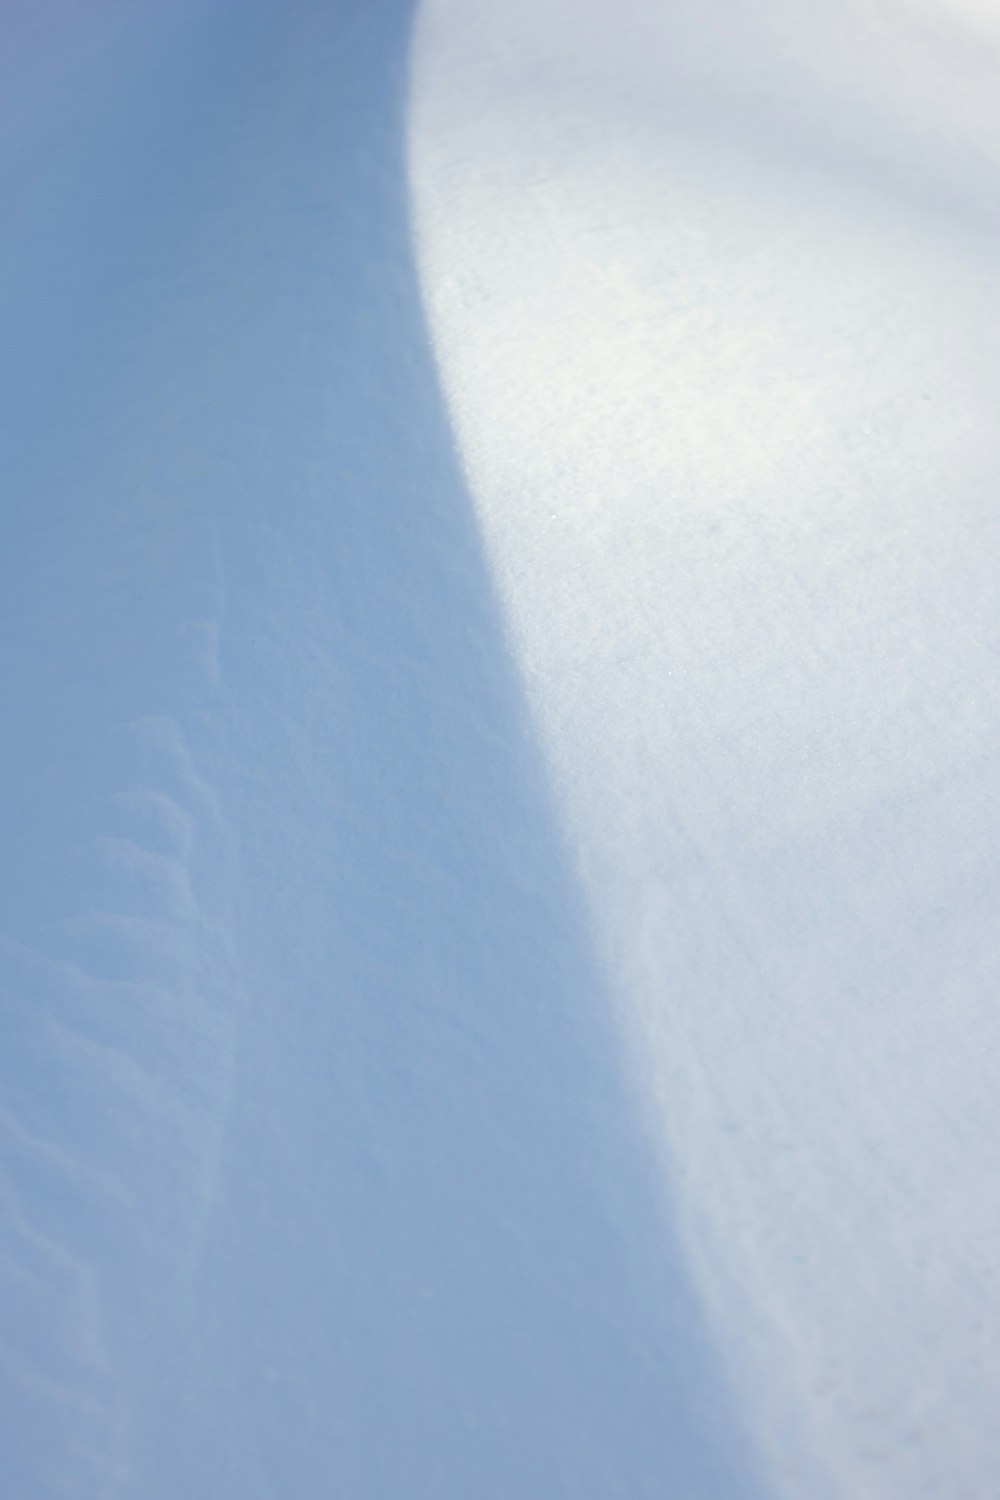 una persona montando una tabla de snowboard por una pendiente cubierta de nieve